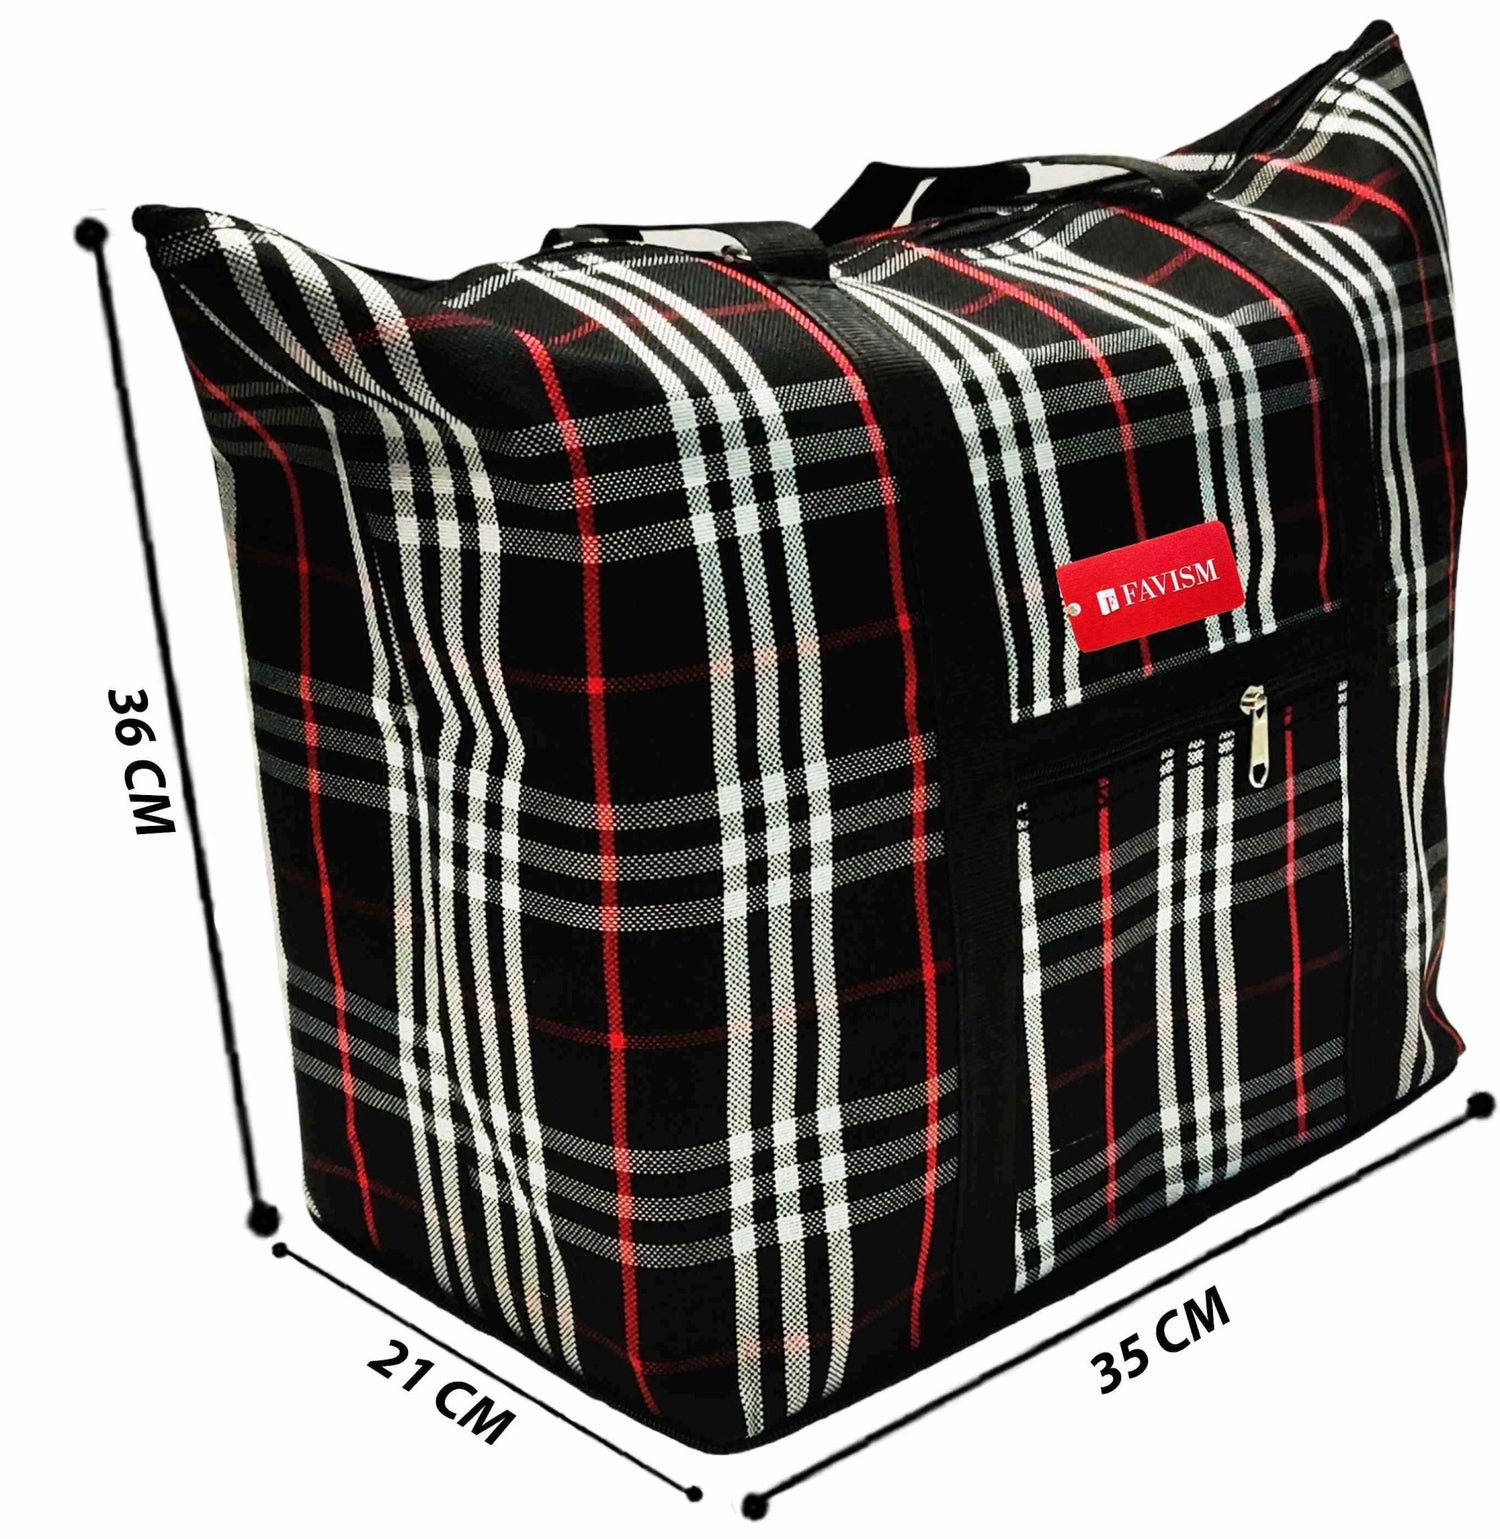 Water resistant folding bag | storage bag | shoulder bag - FAVISM